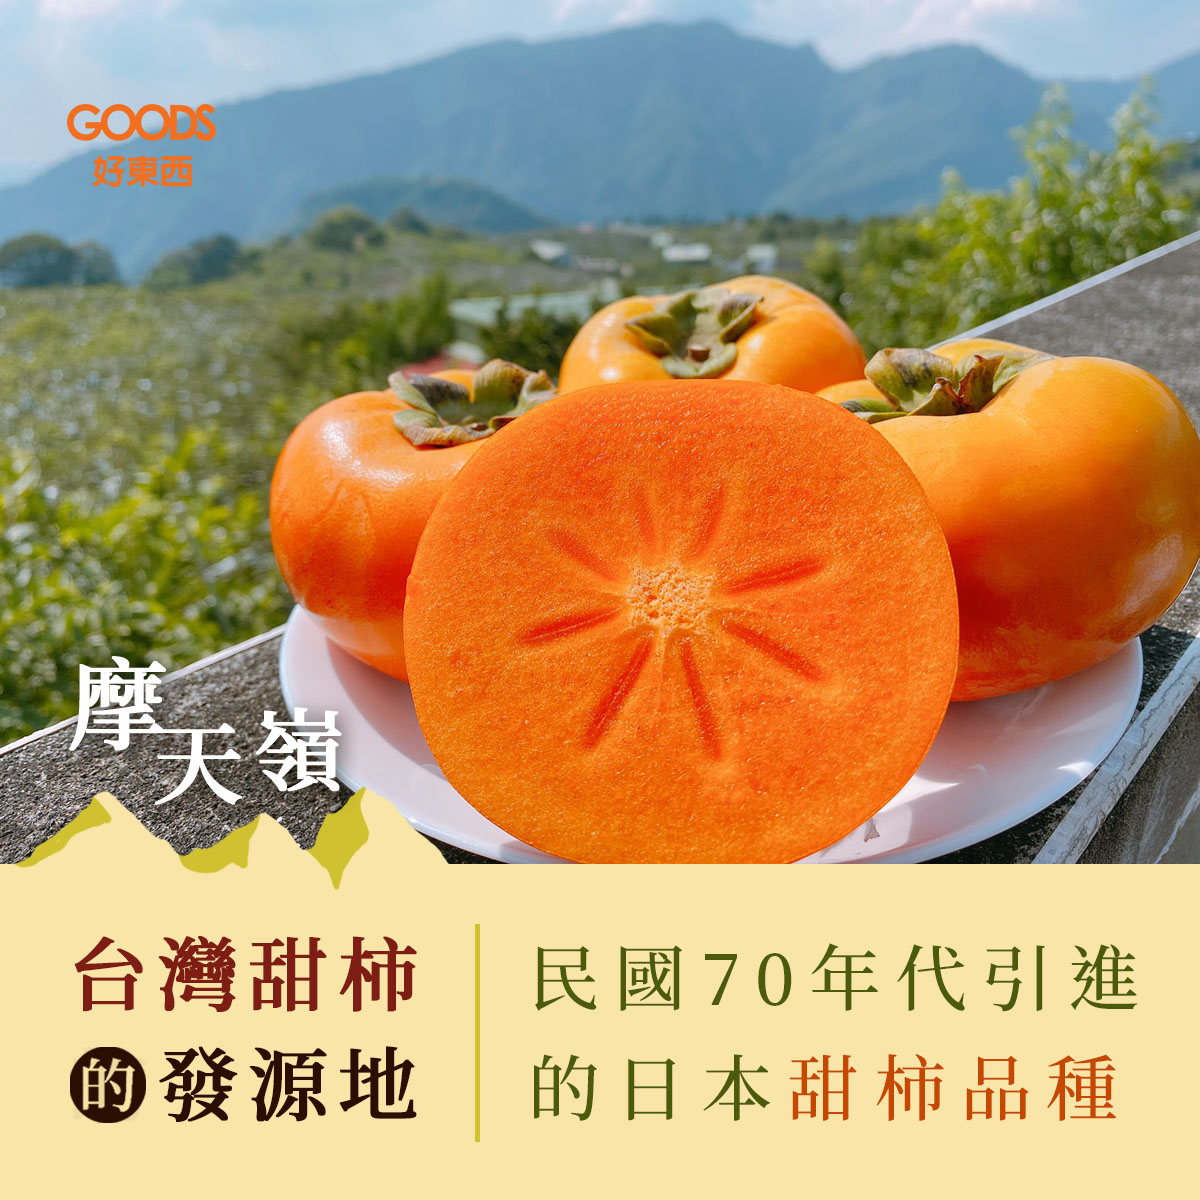 摩天嶺 台灣甜柿的發源地